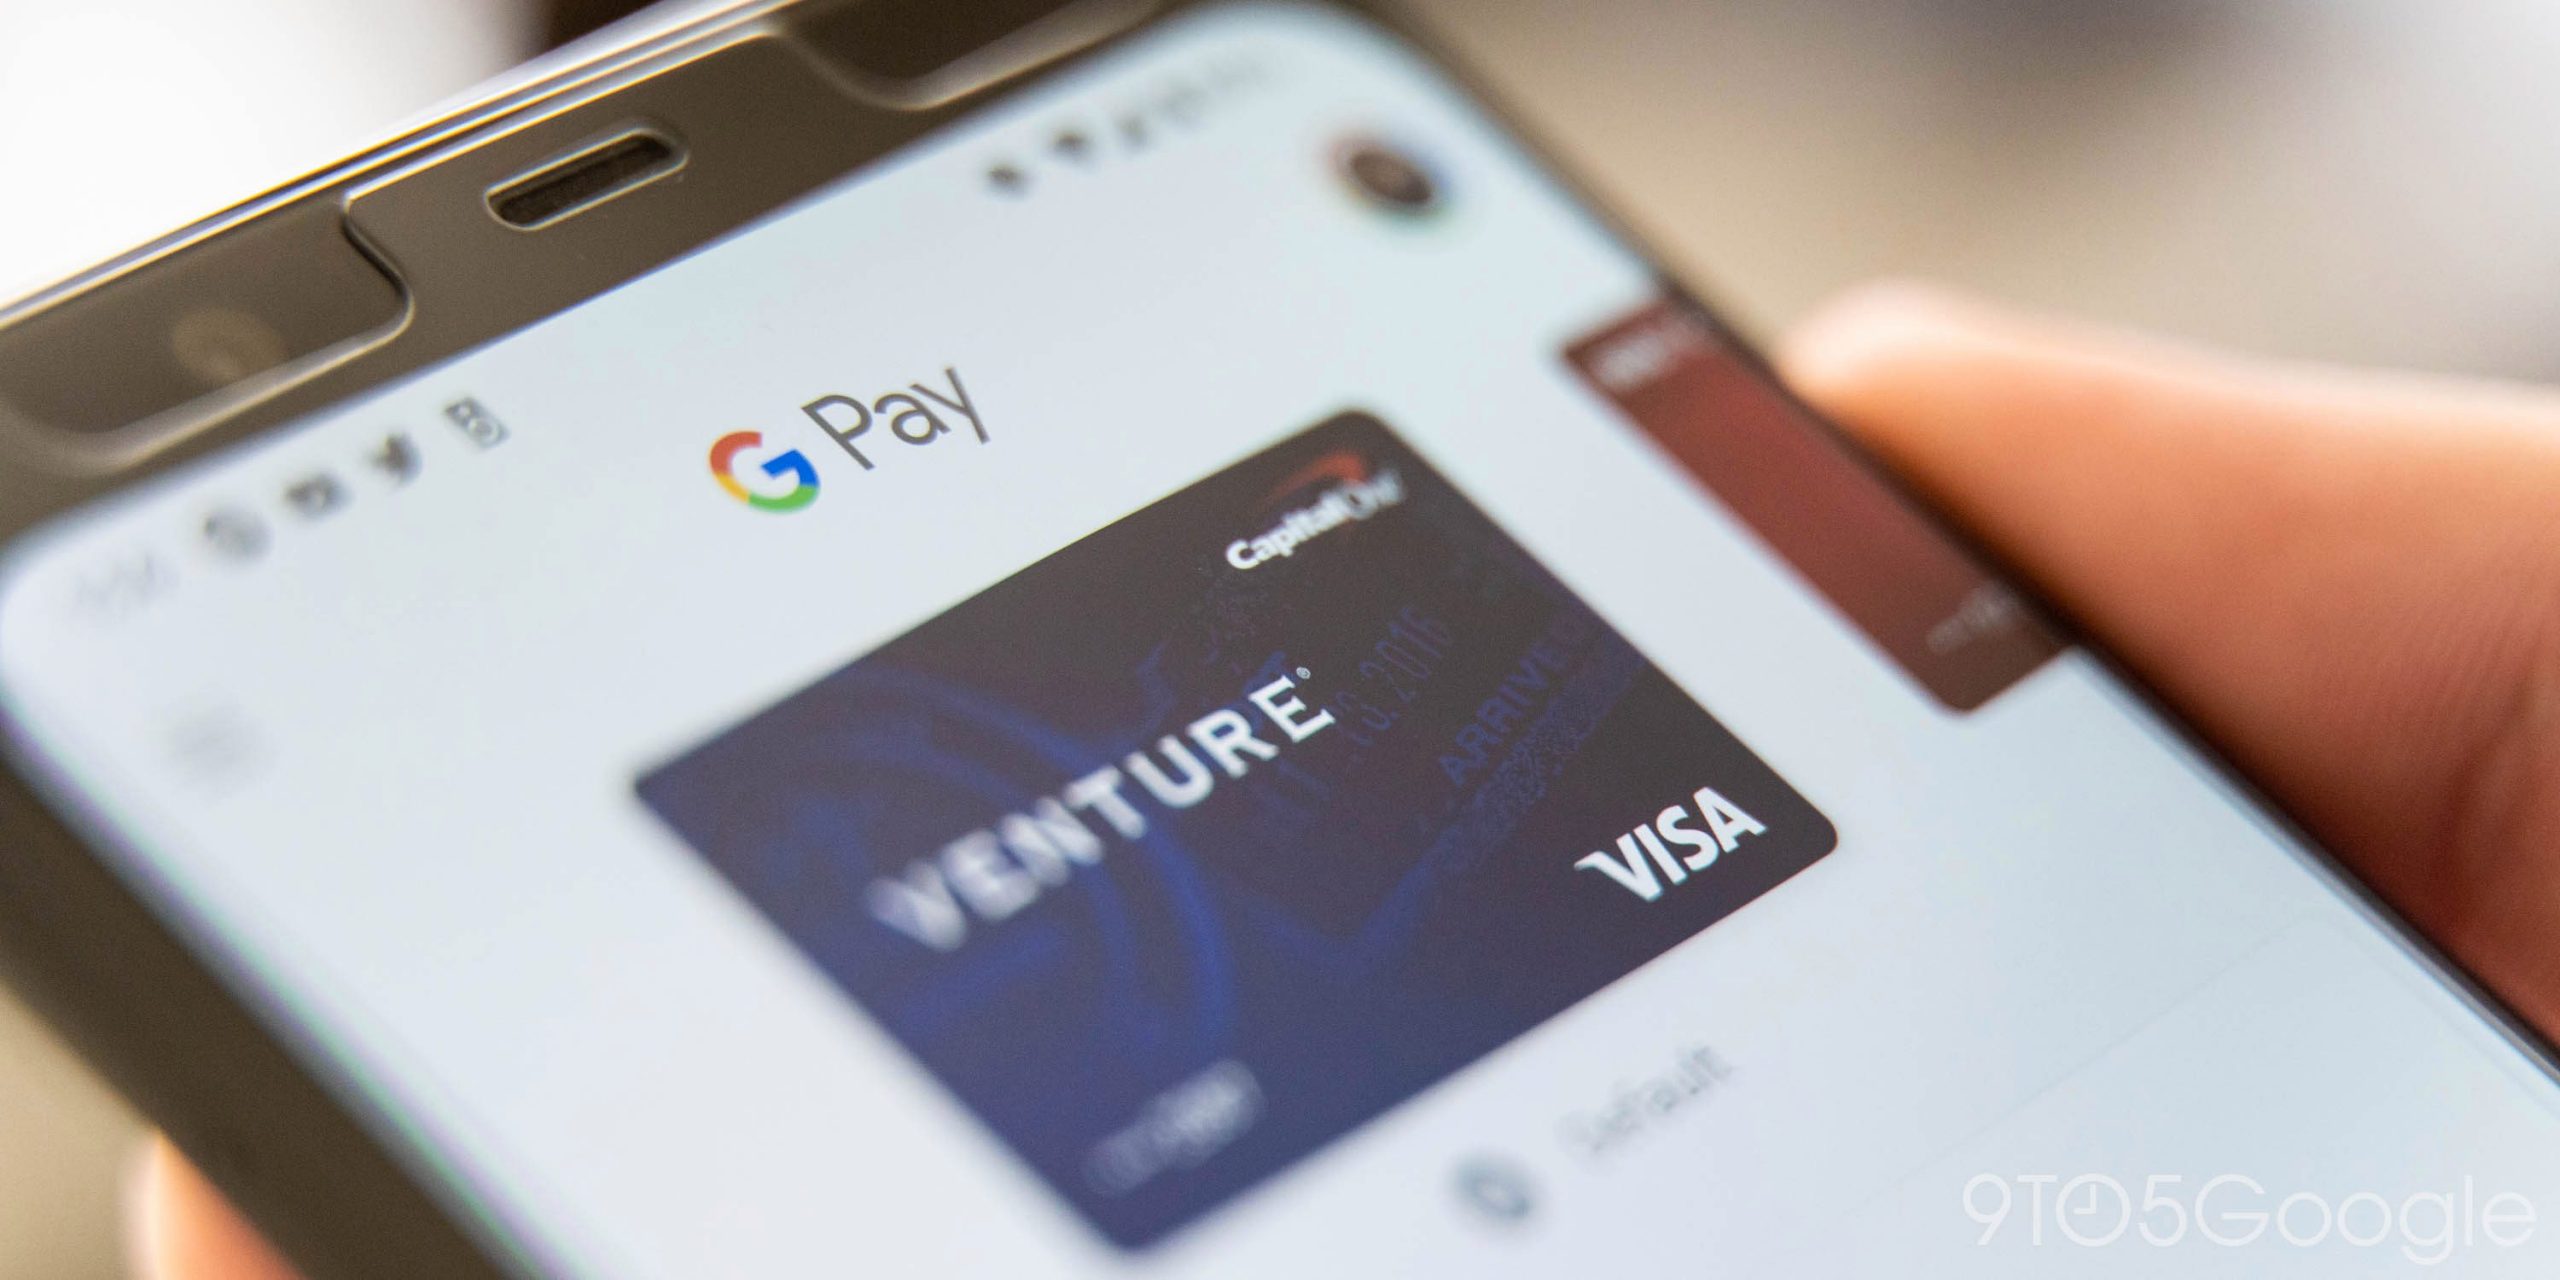 O Google Pay, focado nas compras, está reformulado